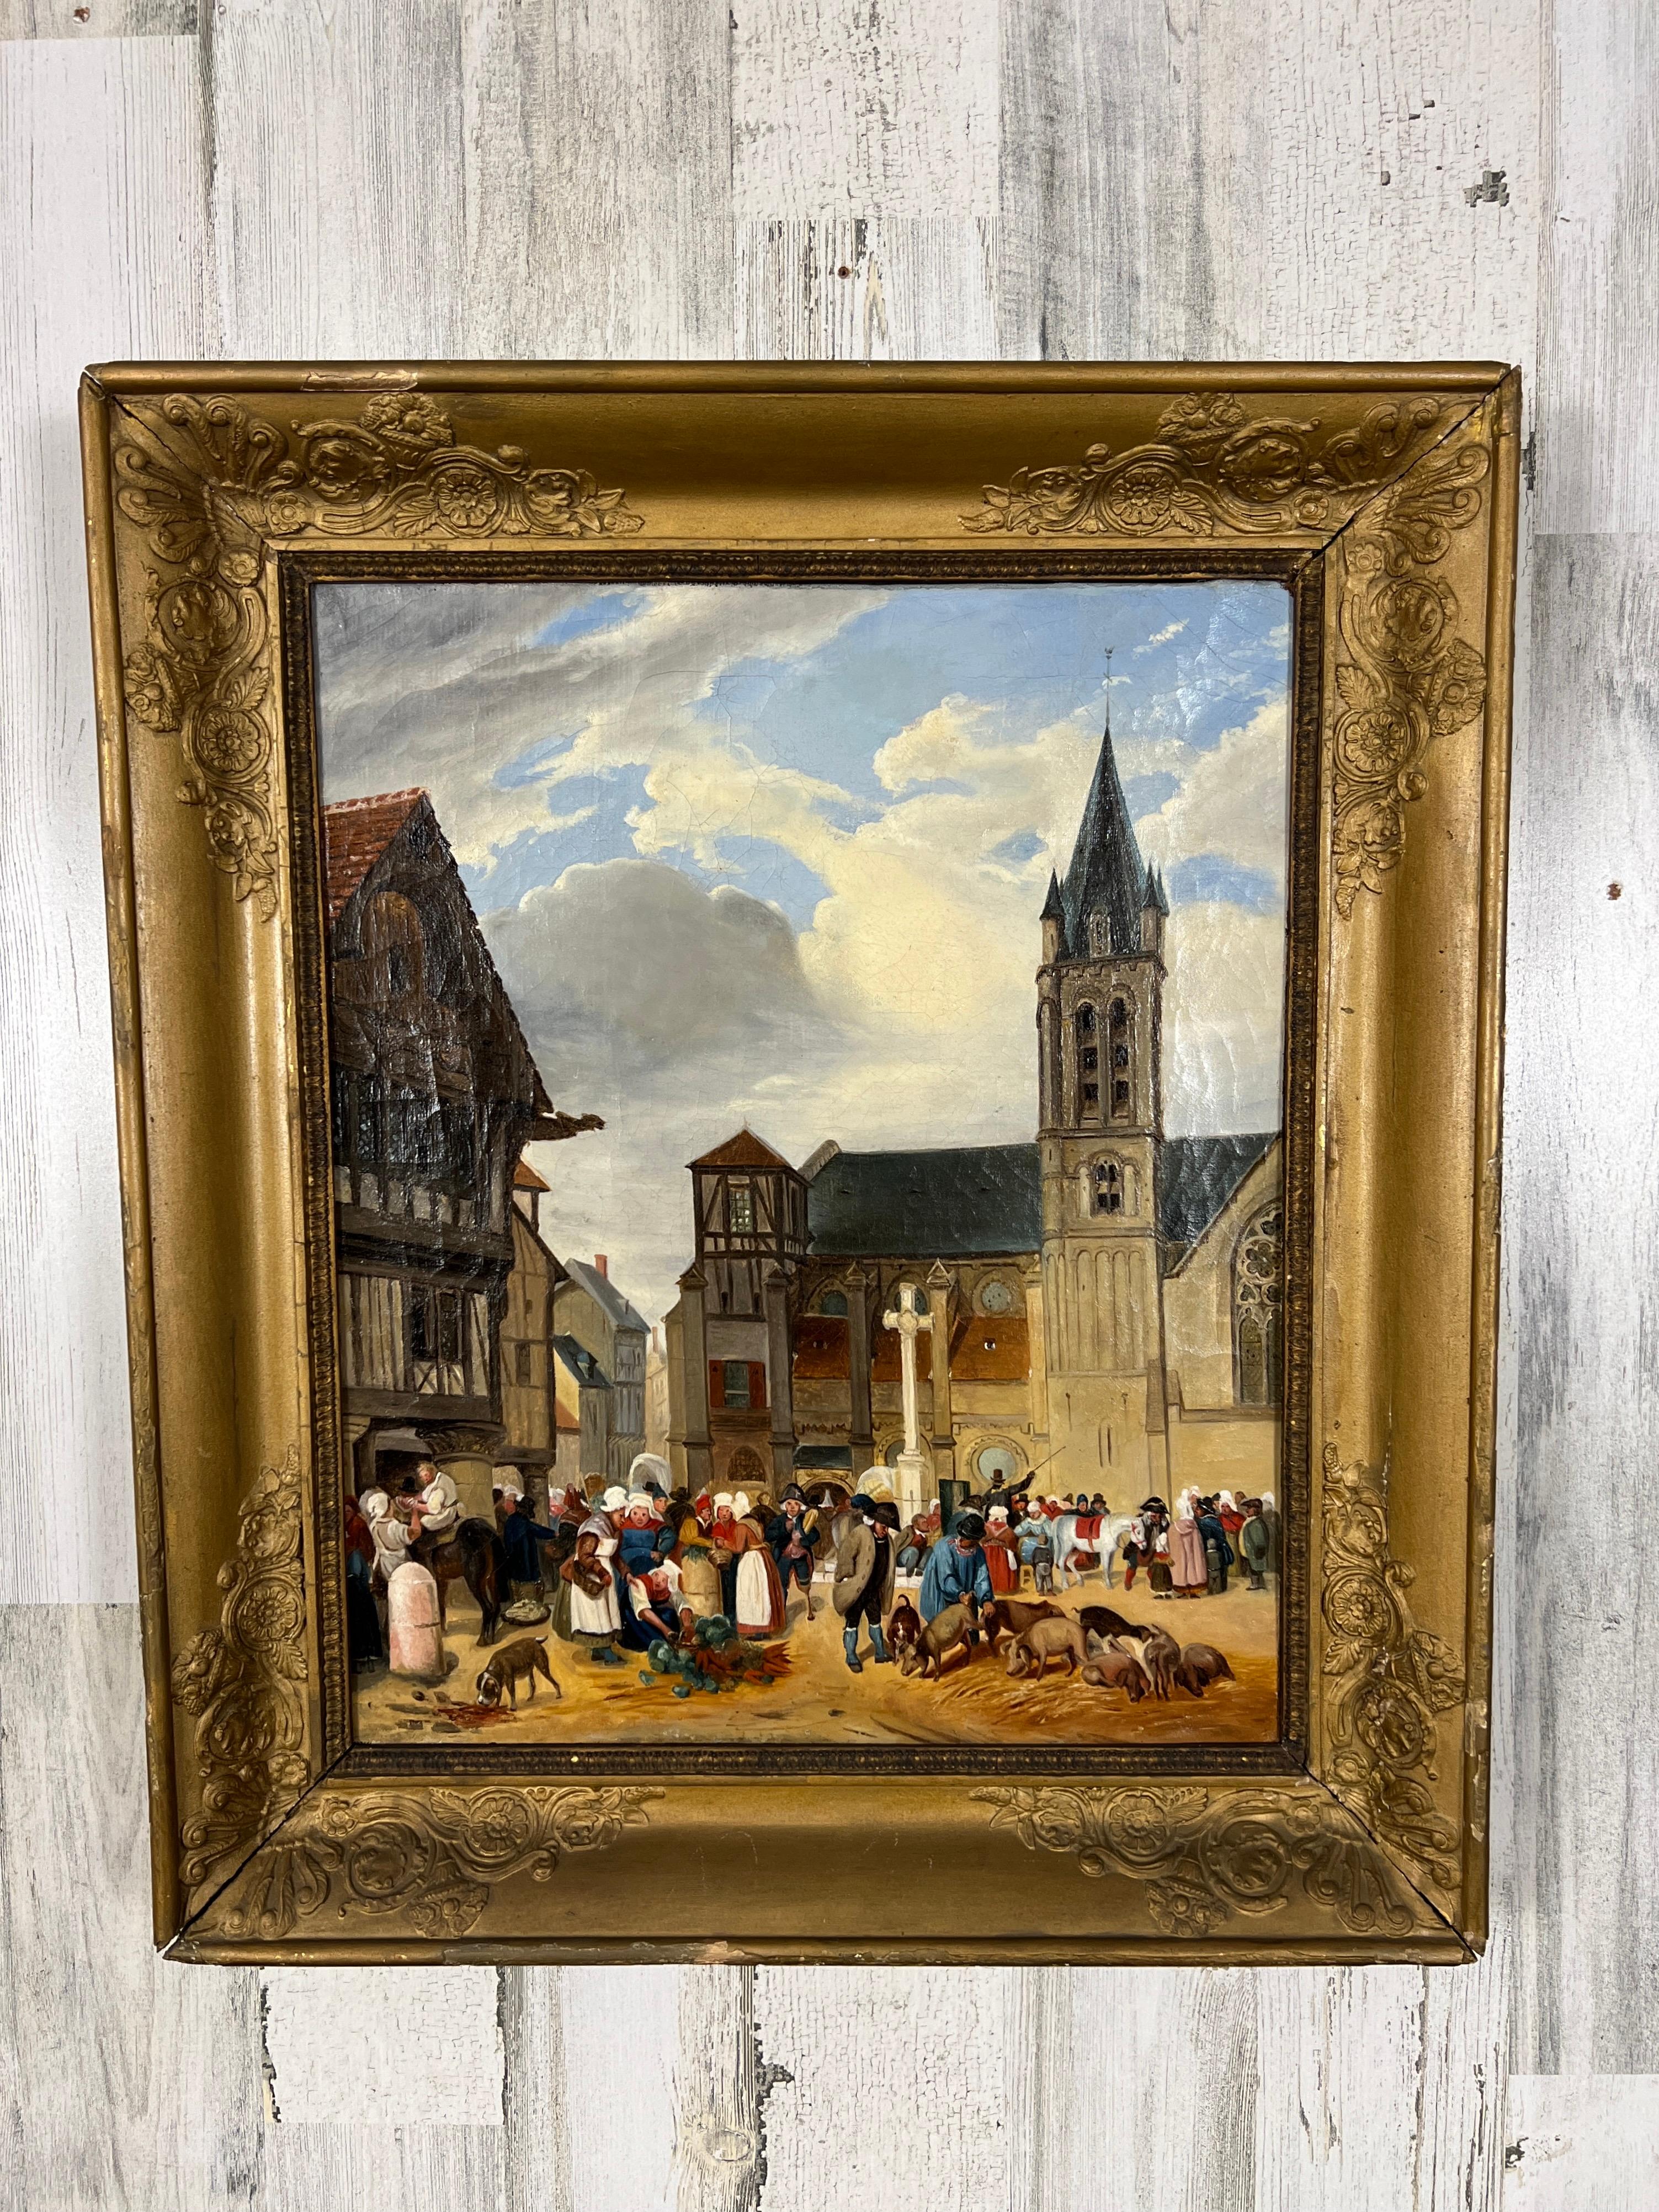 Provinzielles Öl auf Leinwand, das eine französische Marktszene mit Handelswaren im Stadtzentrum darstellt, um 1850.
 